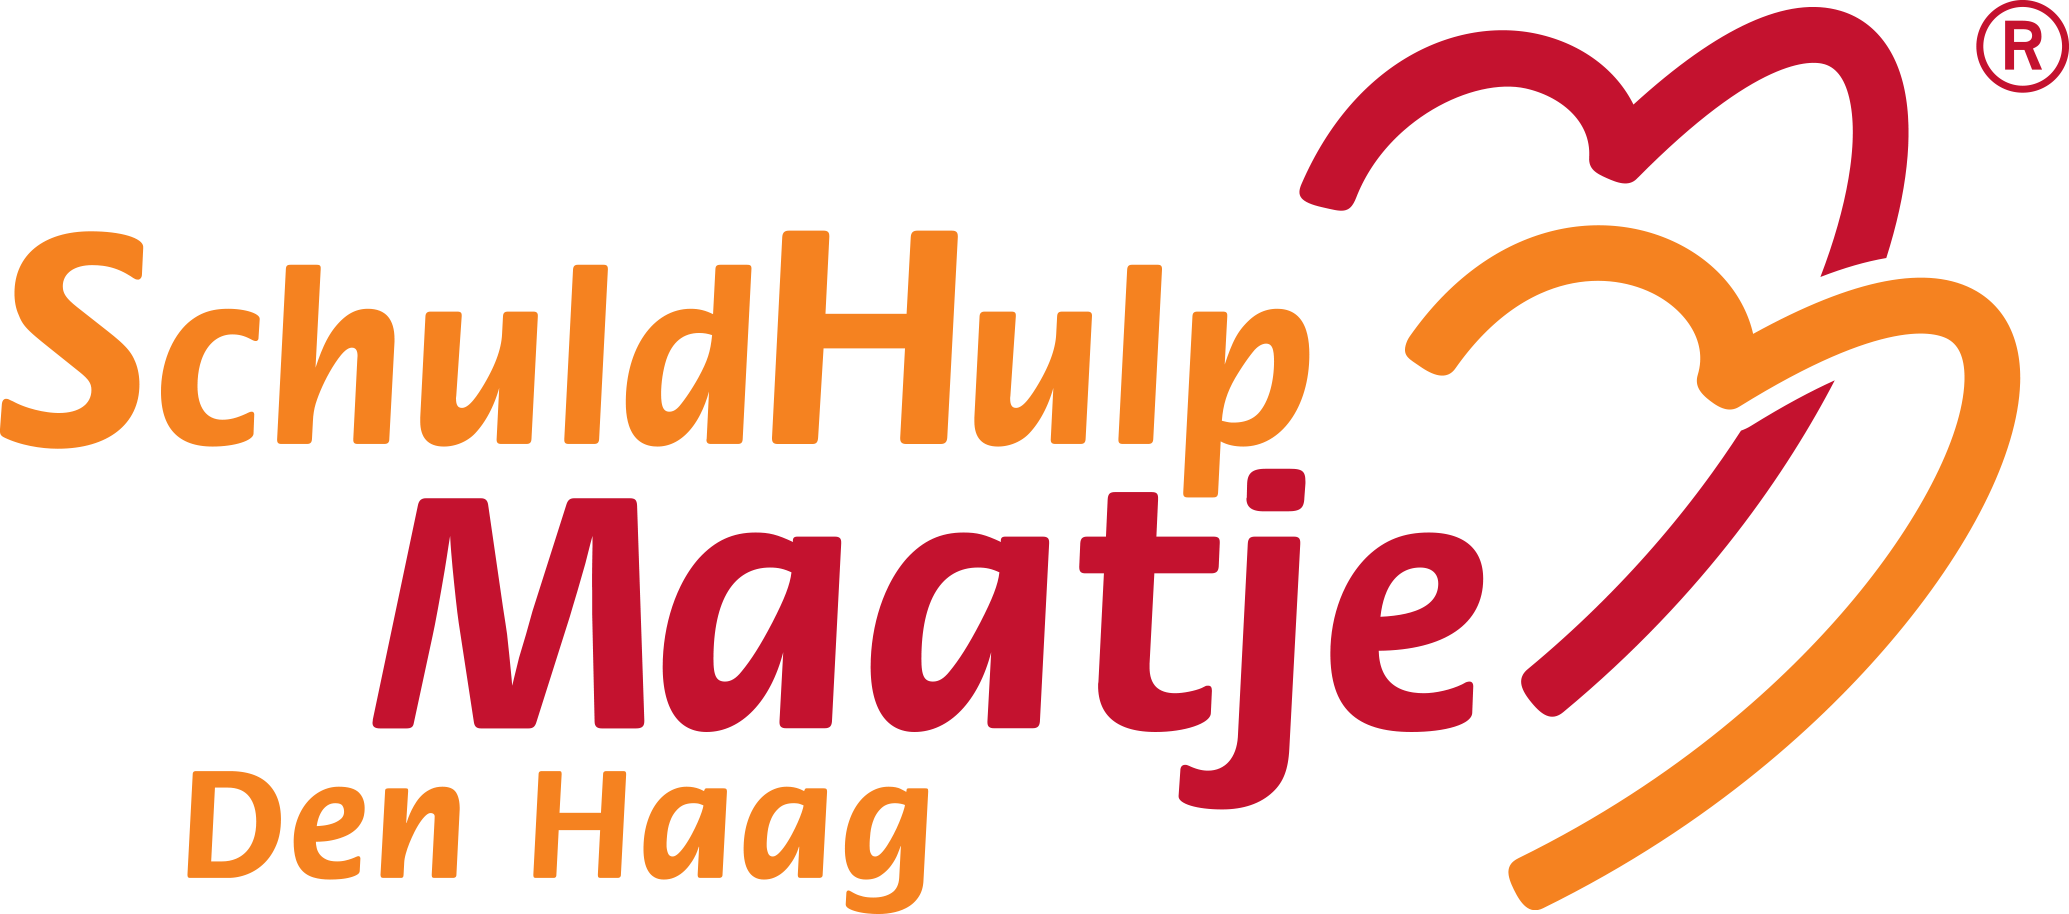 Het logo van stichting SchuldHulpMaatje Den Haag.